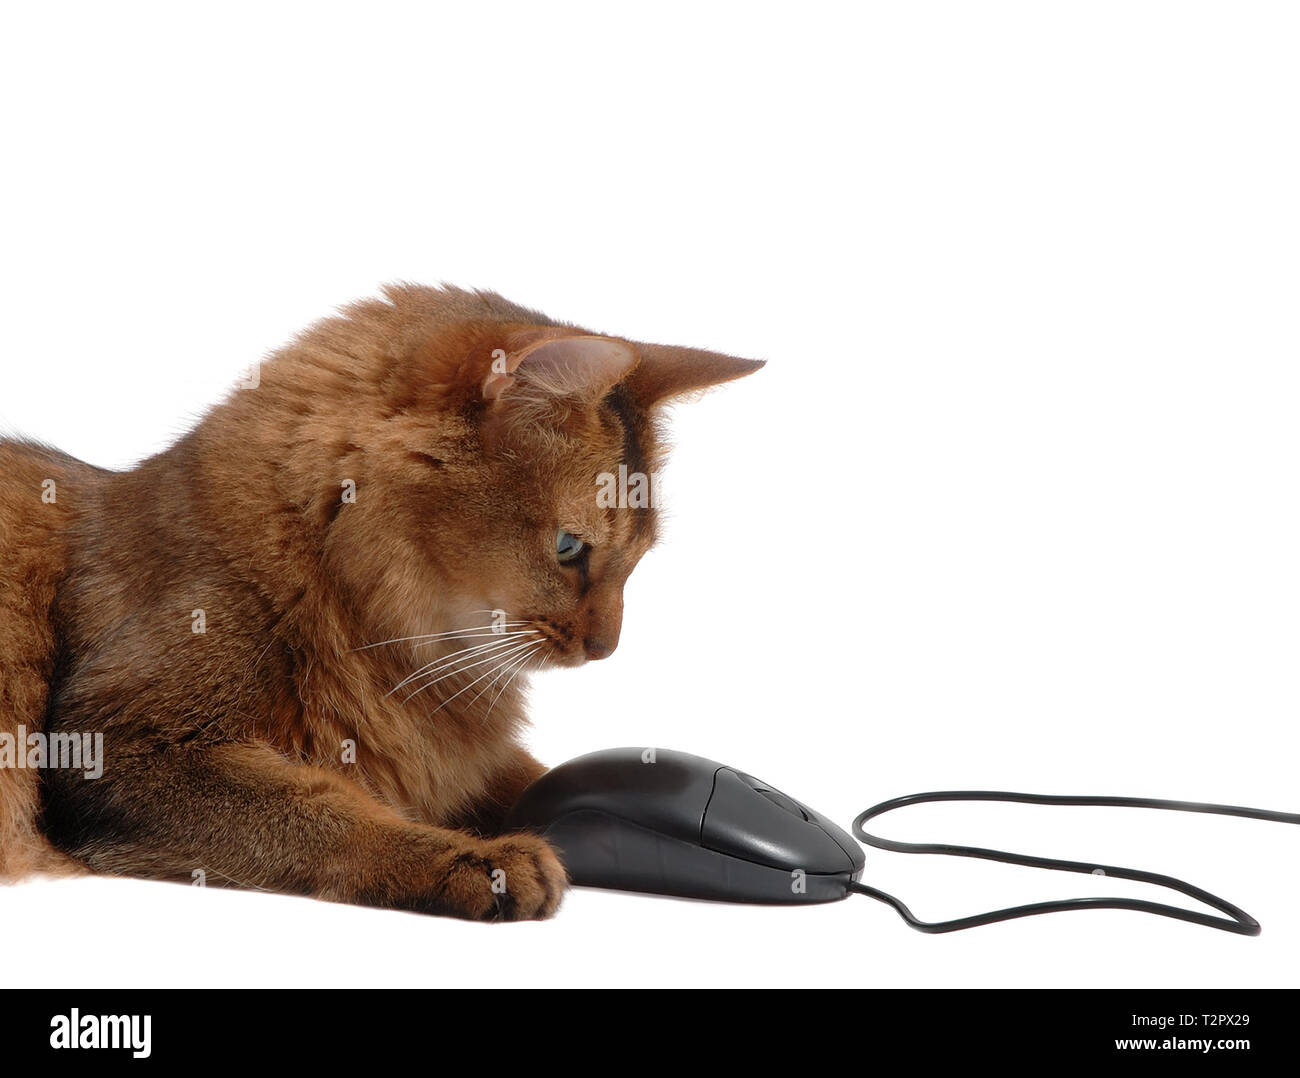 Beau somali cat noir avec la souris d'ordinateur - isolé sur fond blanc Banque D'Images